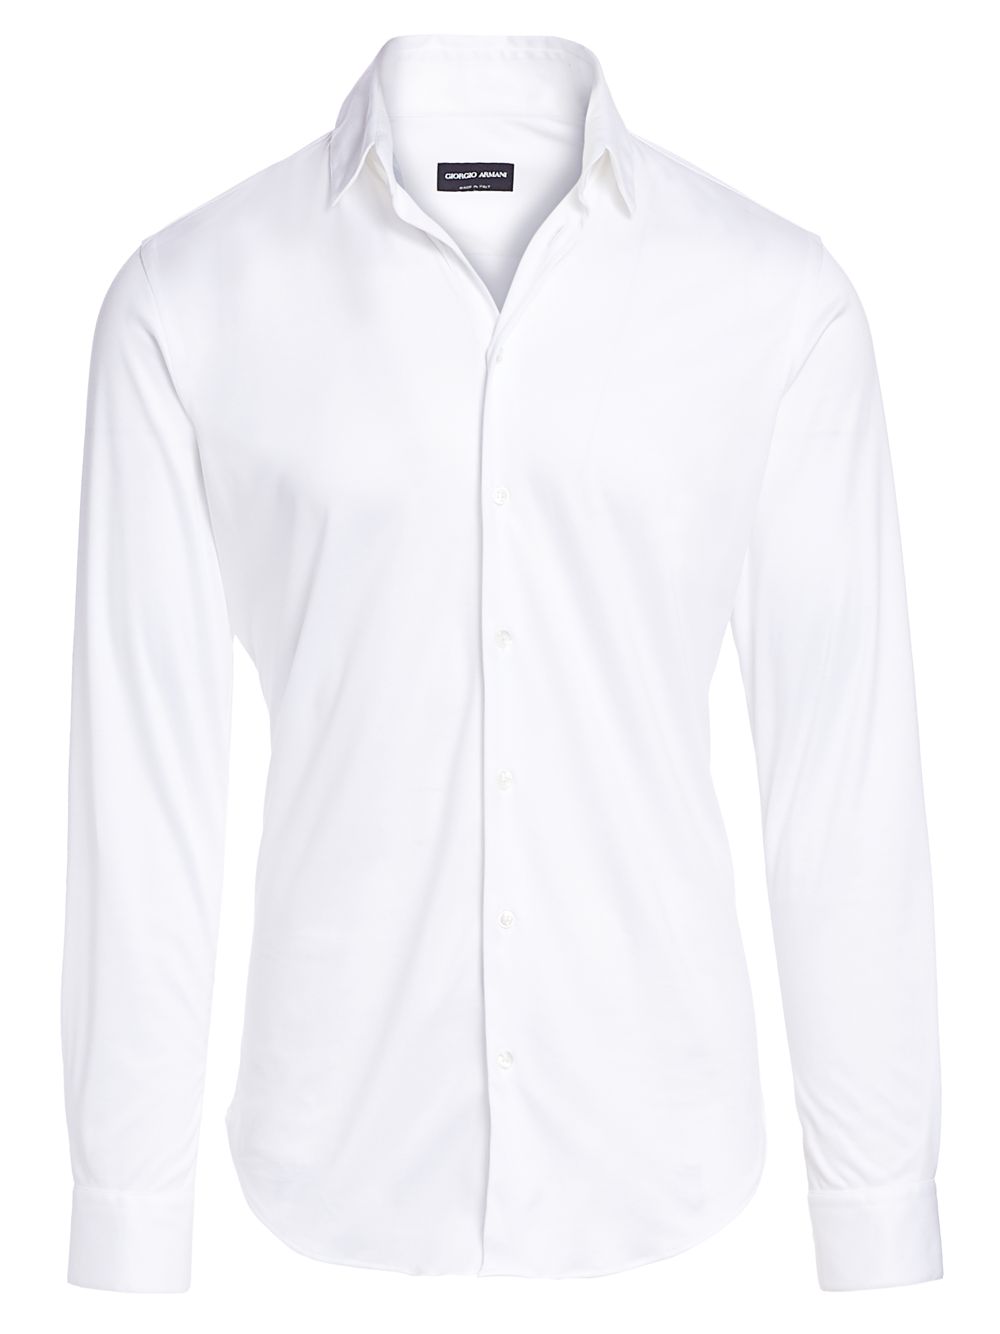 Однотонная спортивная рубашка интерлок Giorgio Armani, белый шелковистая джинсовая спортивная рубашка giorgio armani черный